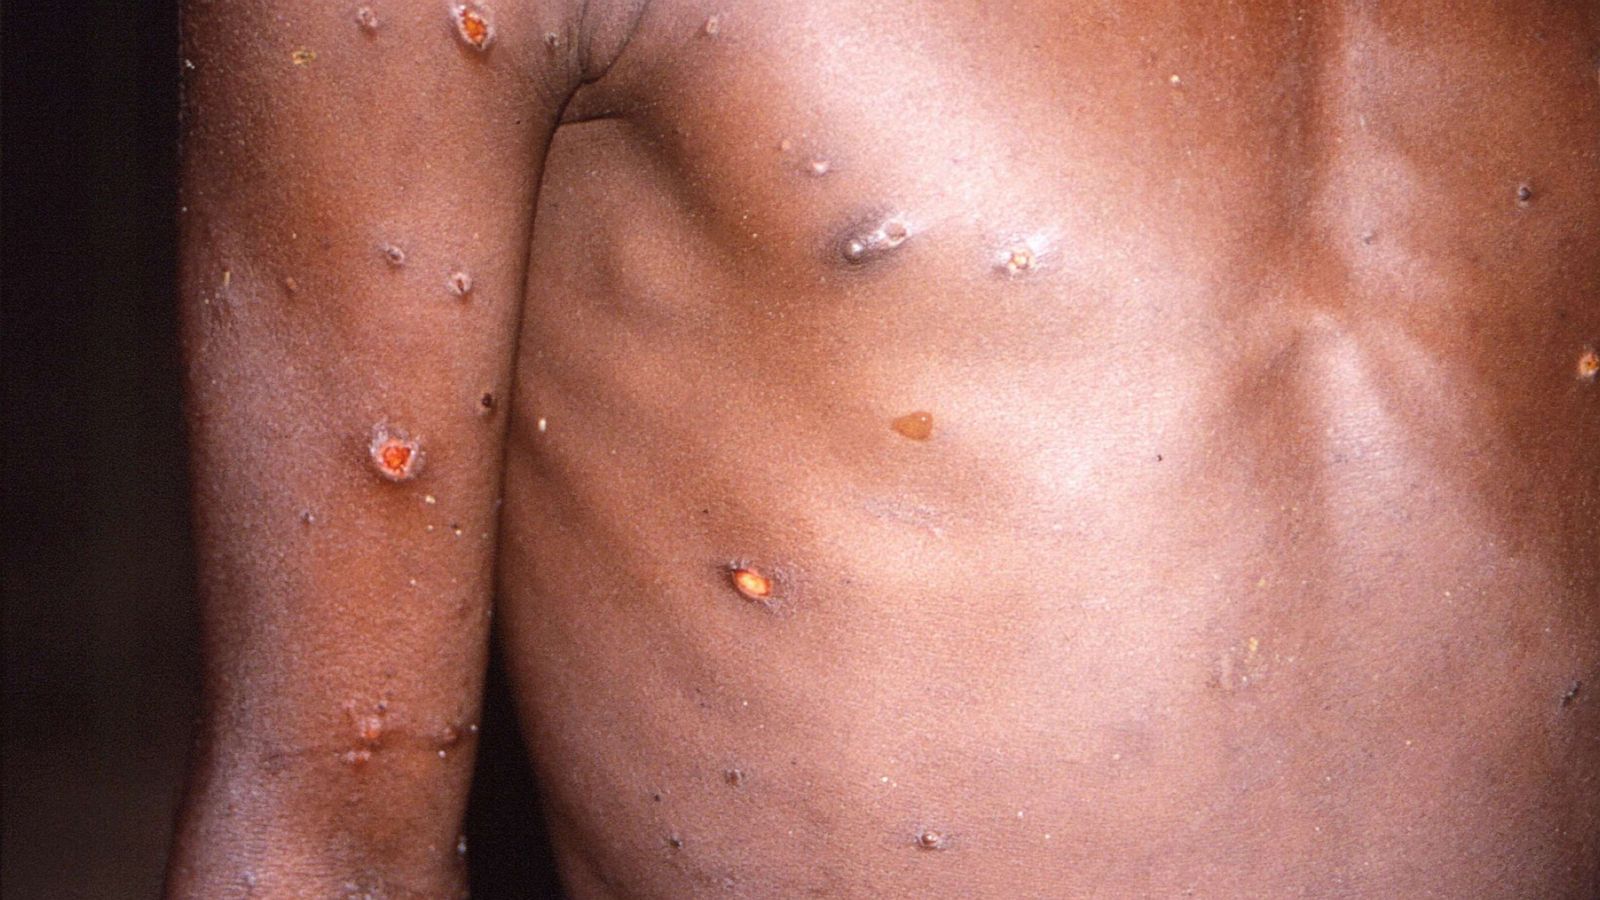 Man Describes Painful, Miserable Monkeypox Symptoms